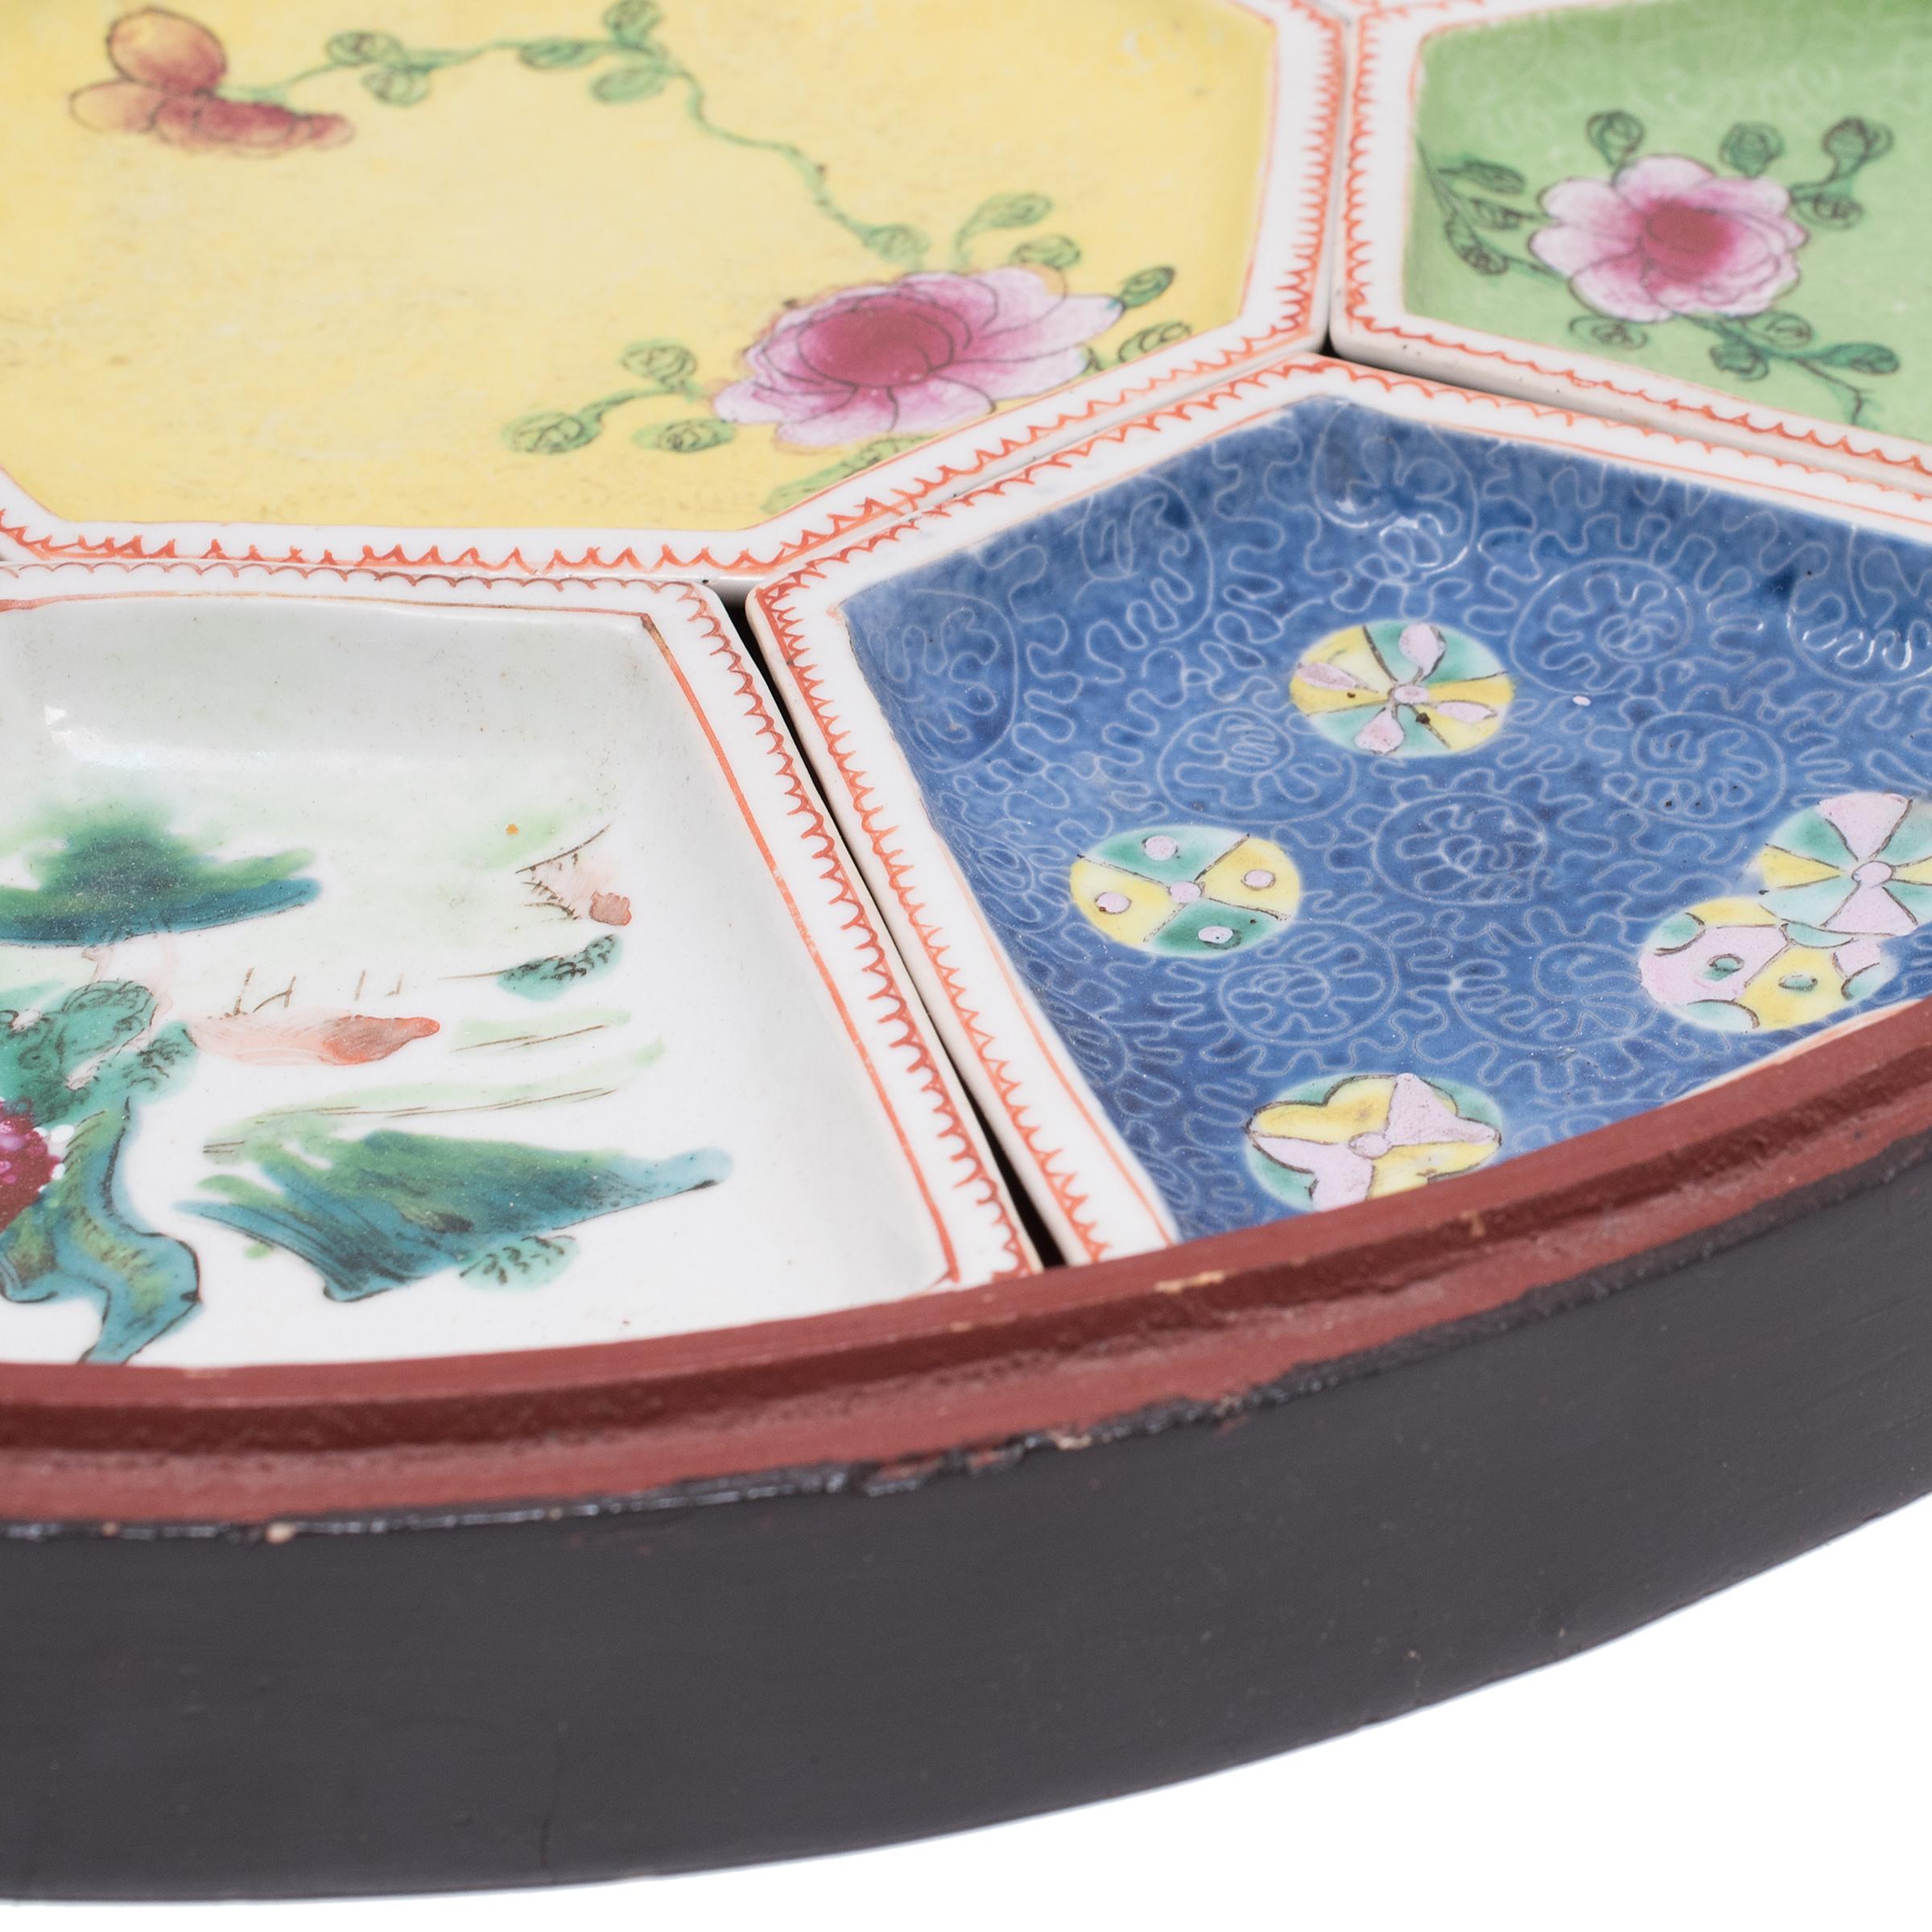 Enameled Chinese Presentation Box with Porcelain Trays, c. 1920